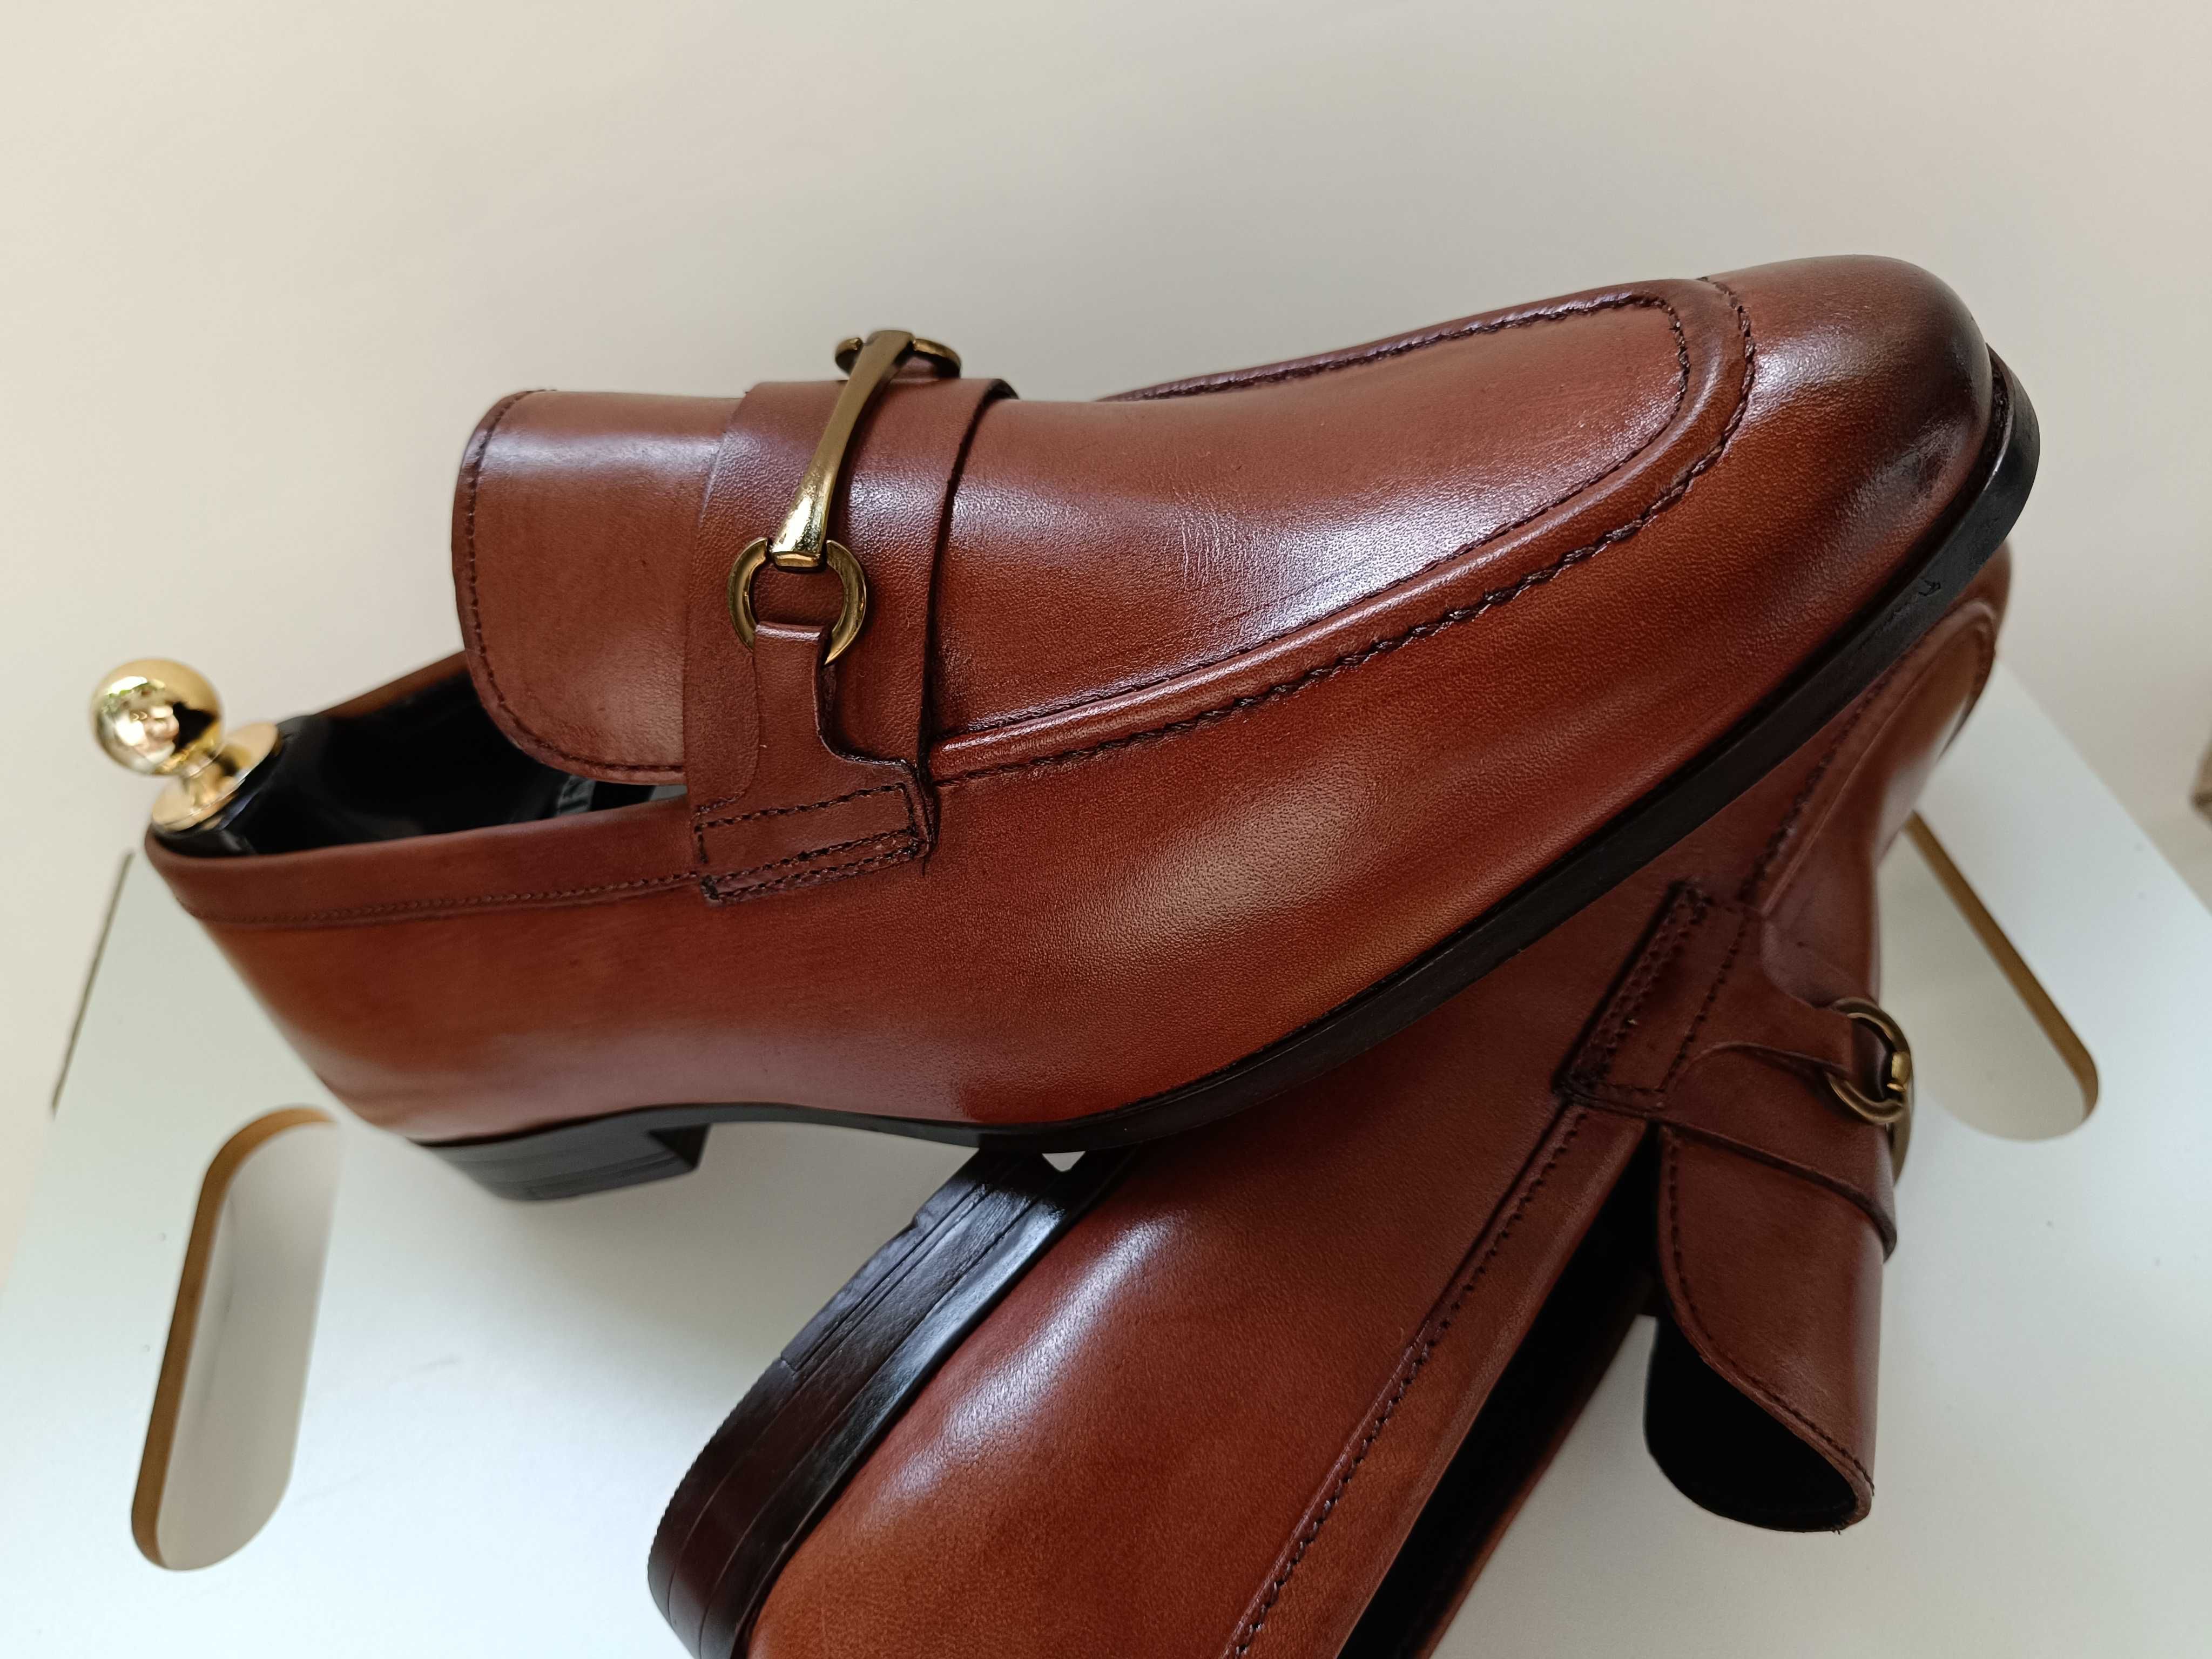 Pantofi loafer 42 bit premium Thomas Crick London NOU piele naturala